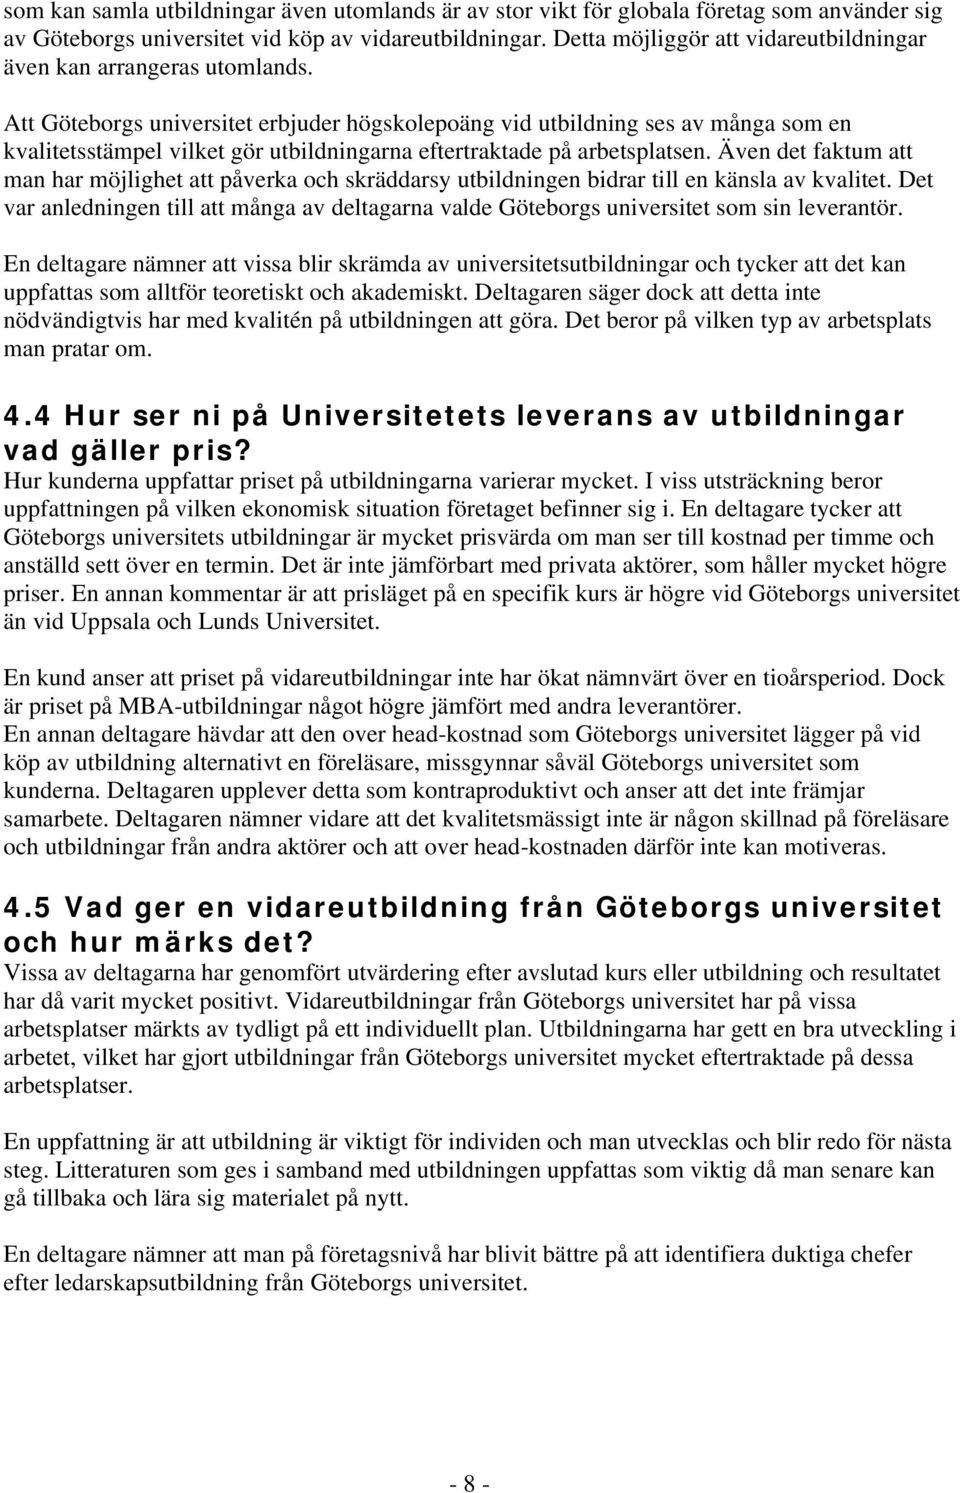 Att Göteborgs universitet erbjuder högskolepoäng vid utbildning ses av många som en kvalitetsstämpel vilket gör utbildningarna eftertraktade på arbetsplatsen.